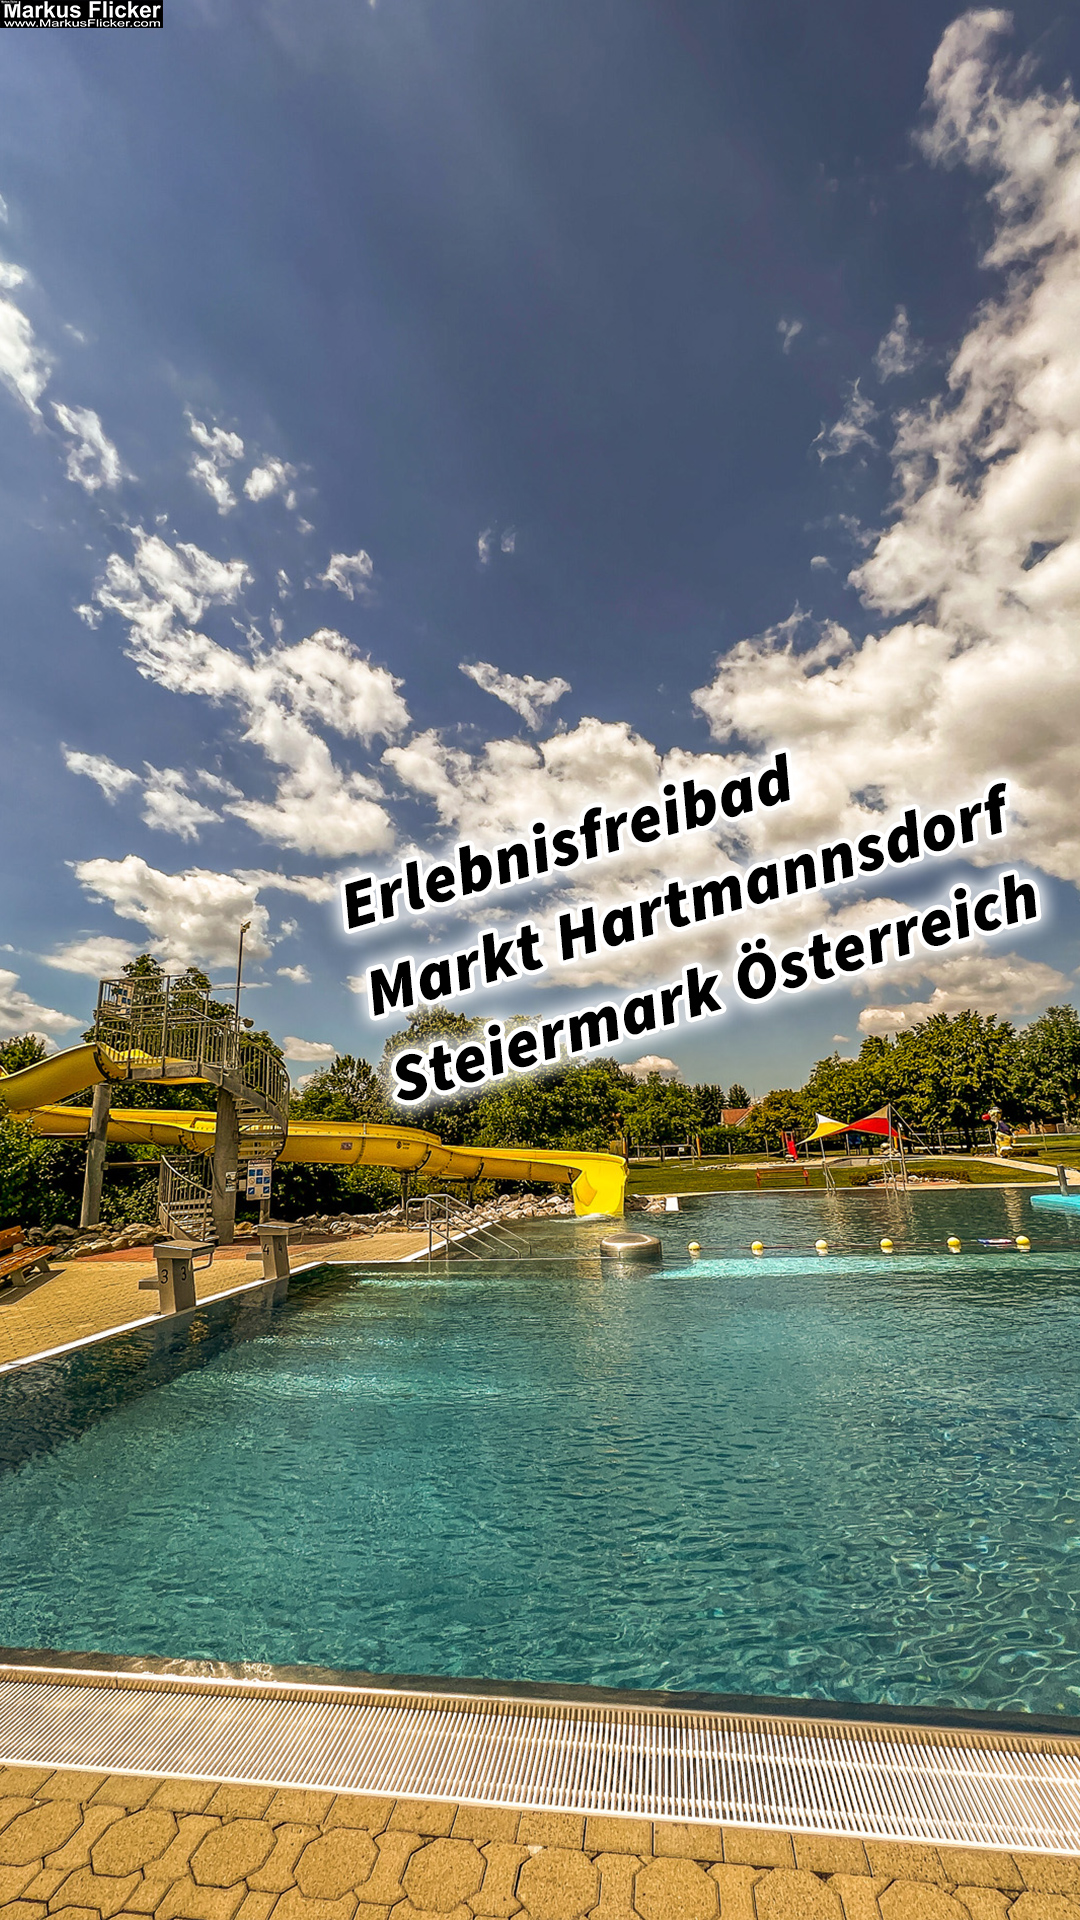 Erlebnisfreibad Schwimmbad Markt Hartmannsdorf Steiermark Österreich Freibad #visitstyria #visitaustria